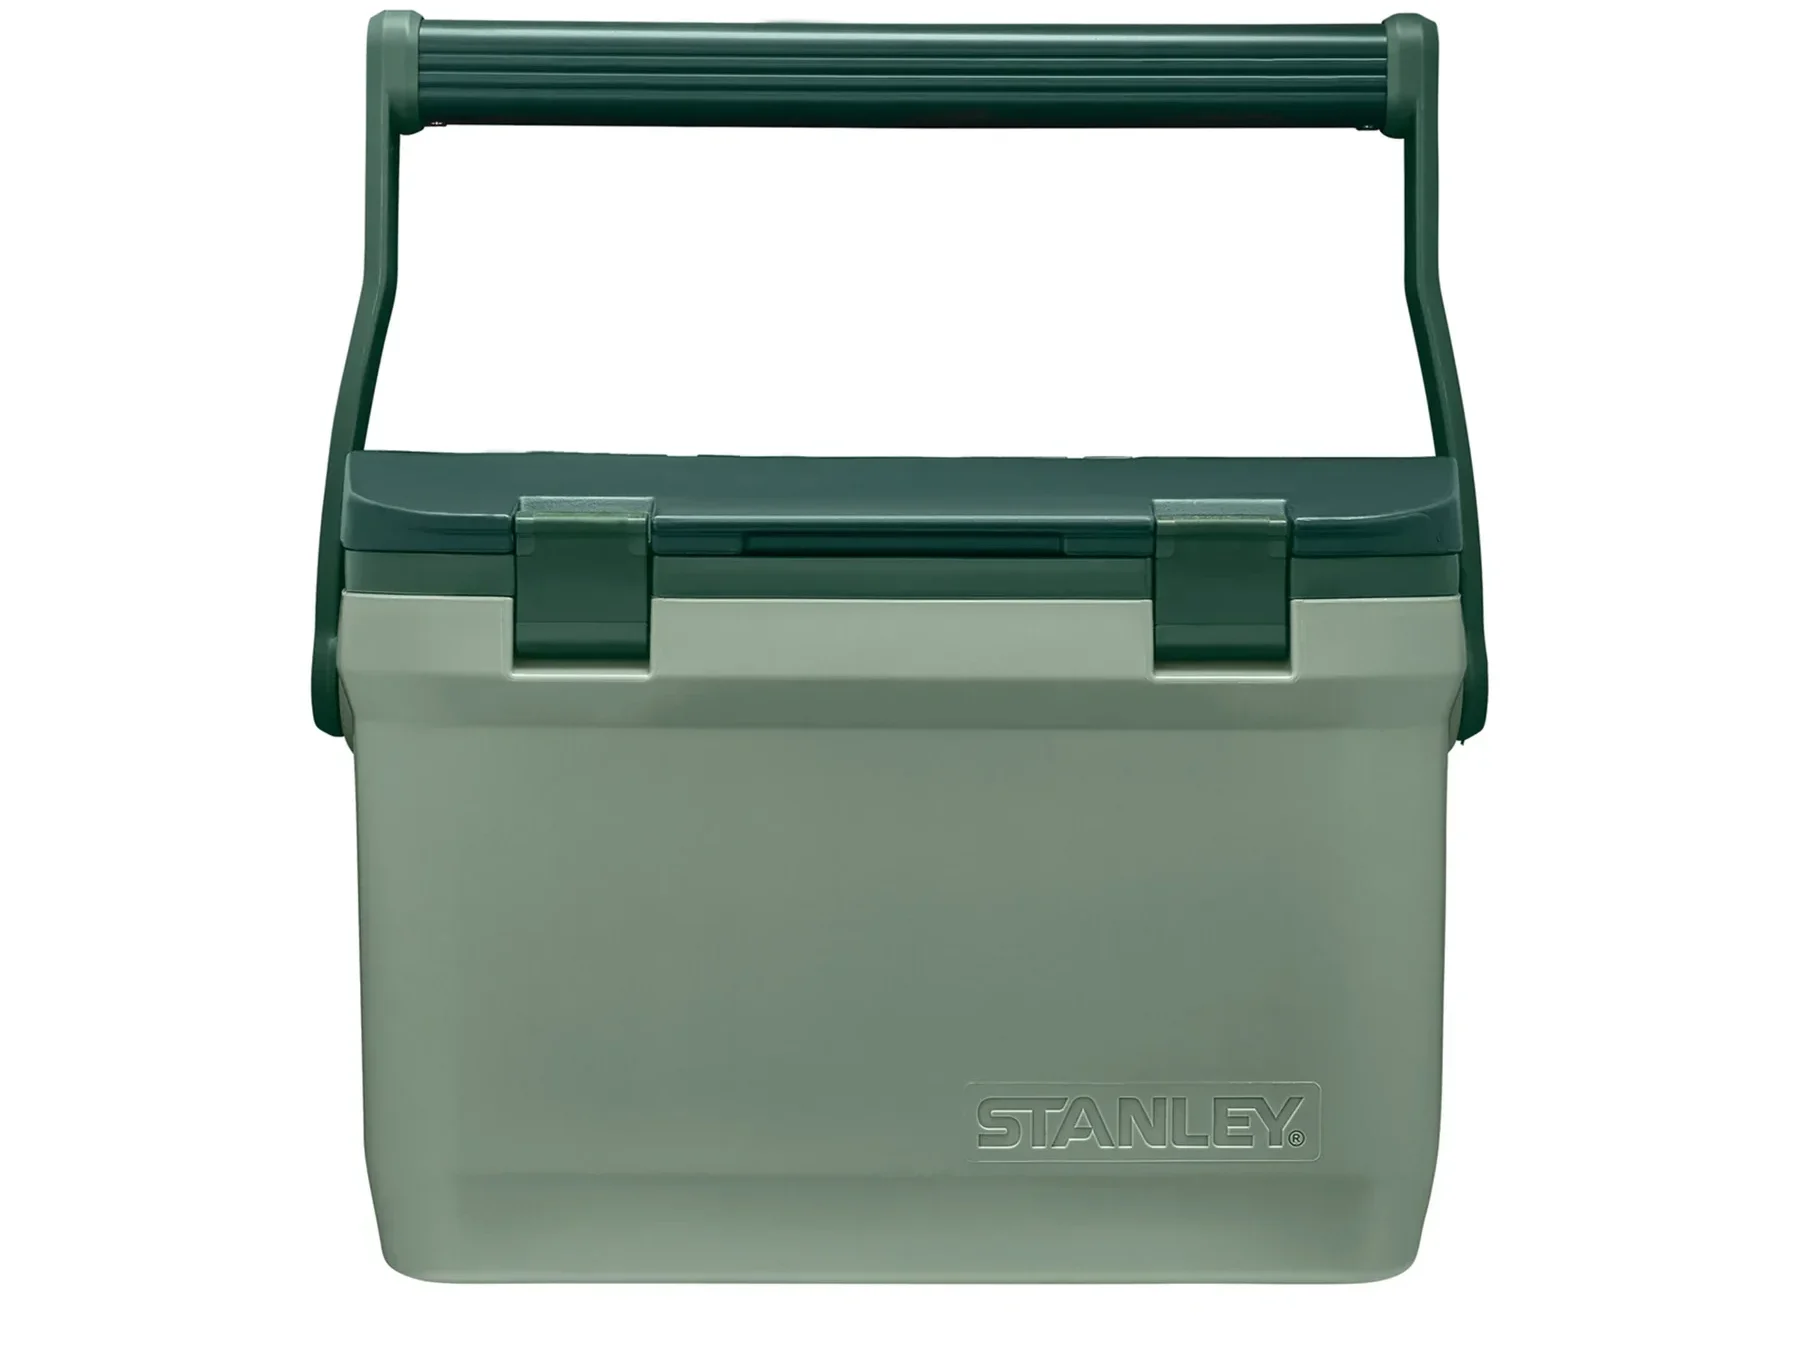 商品名を新ラッチというSTANLEY株式会社の緑色のクーラーボックス